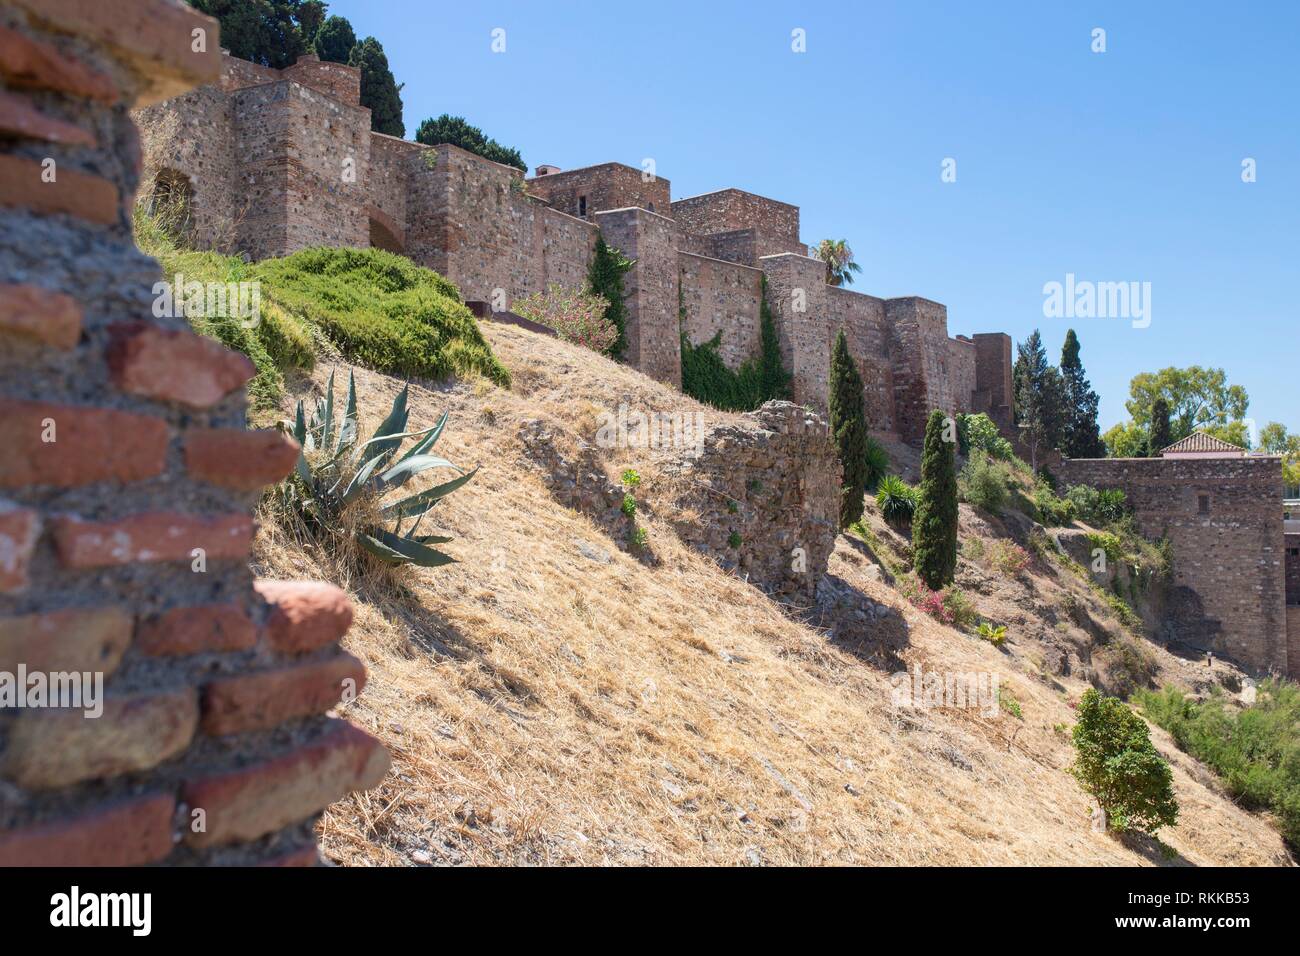 Fortifications de la citadelle Maure de Malaga. Entouré de plantes vertes. Banque D'Images